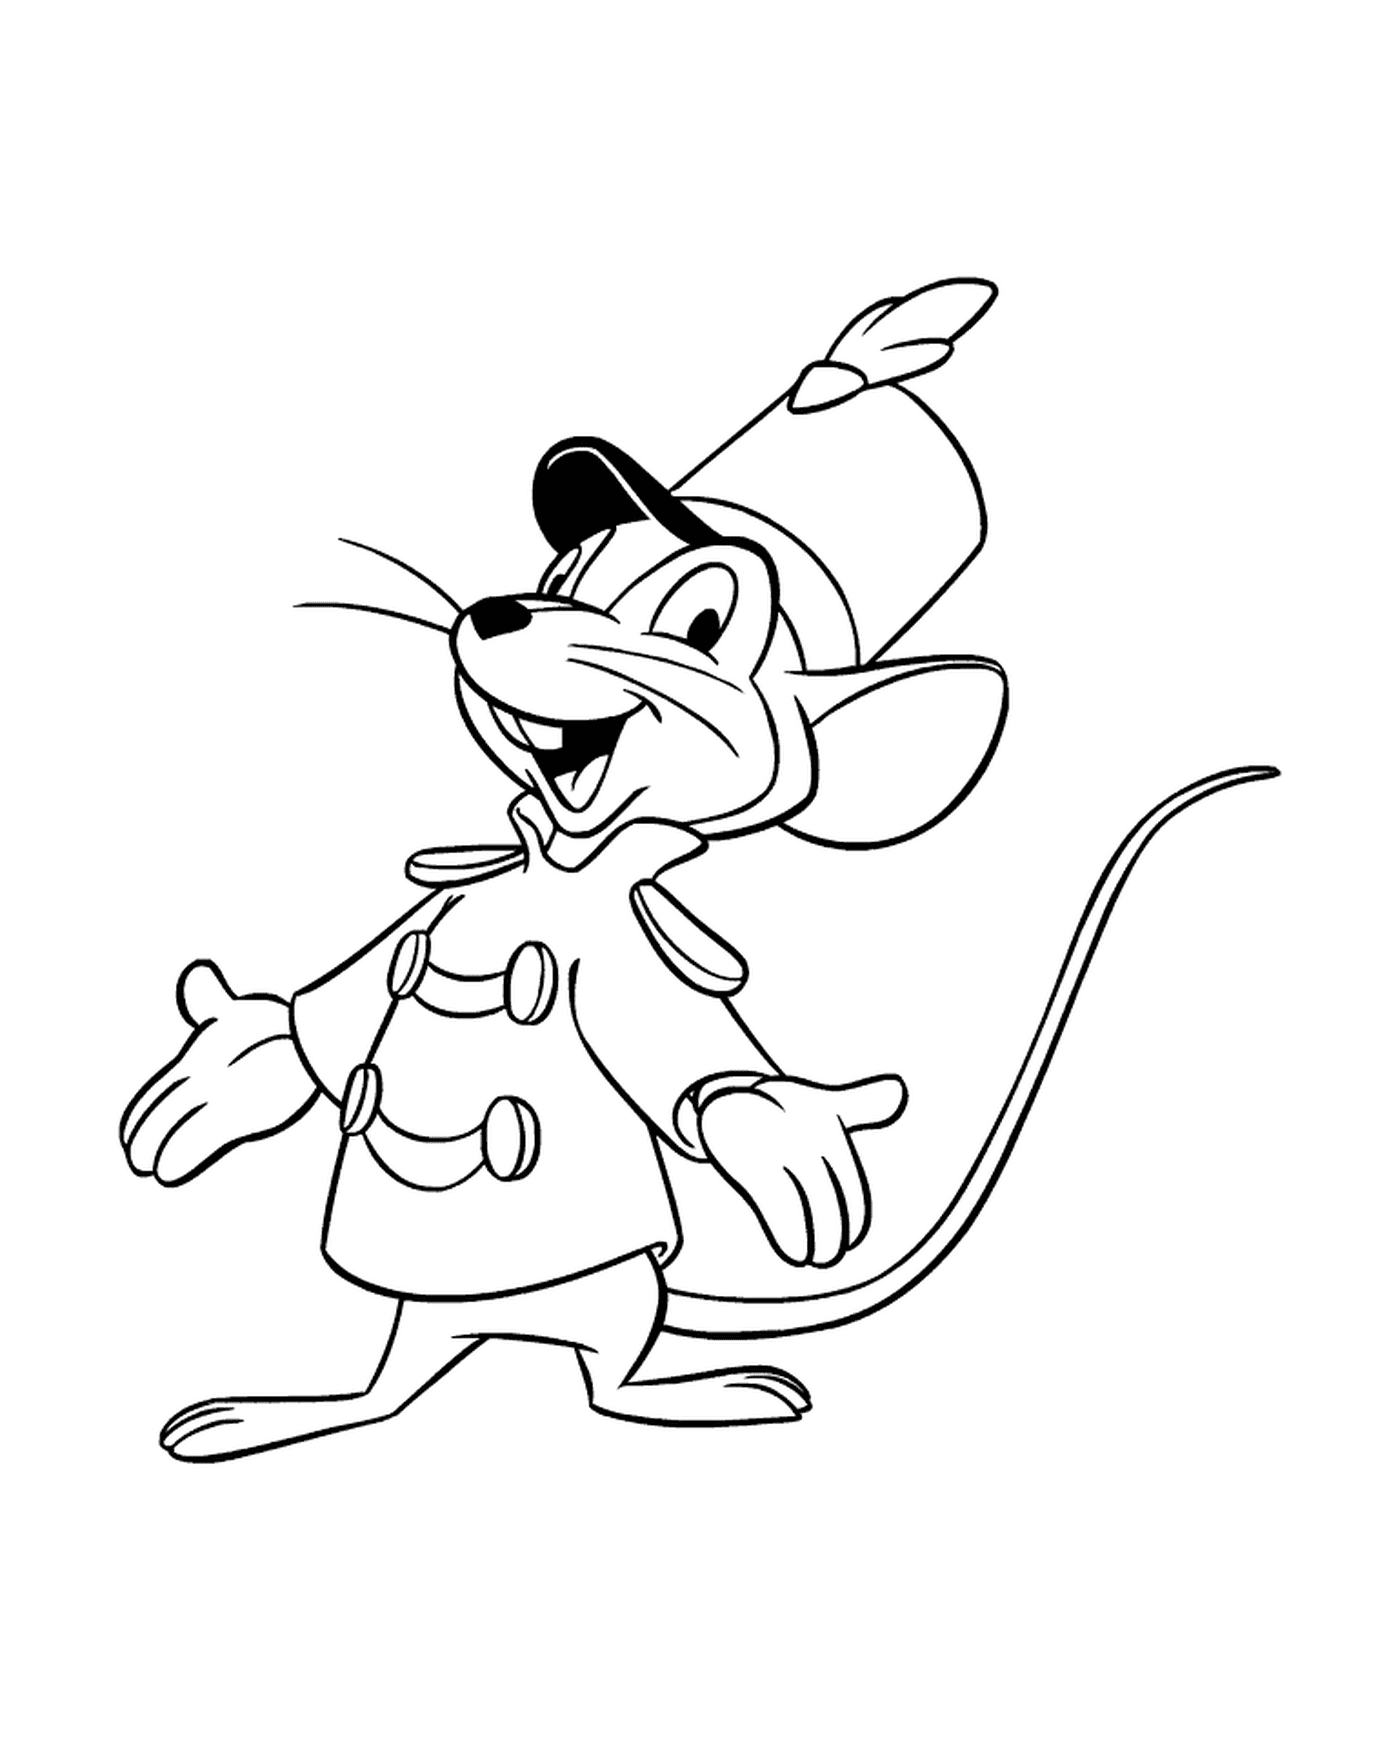  Um rato vestido com um casaco e um chapéu 